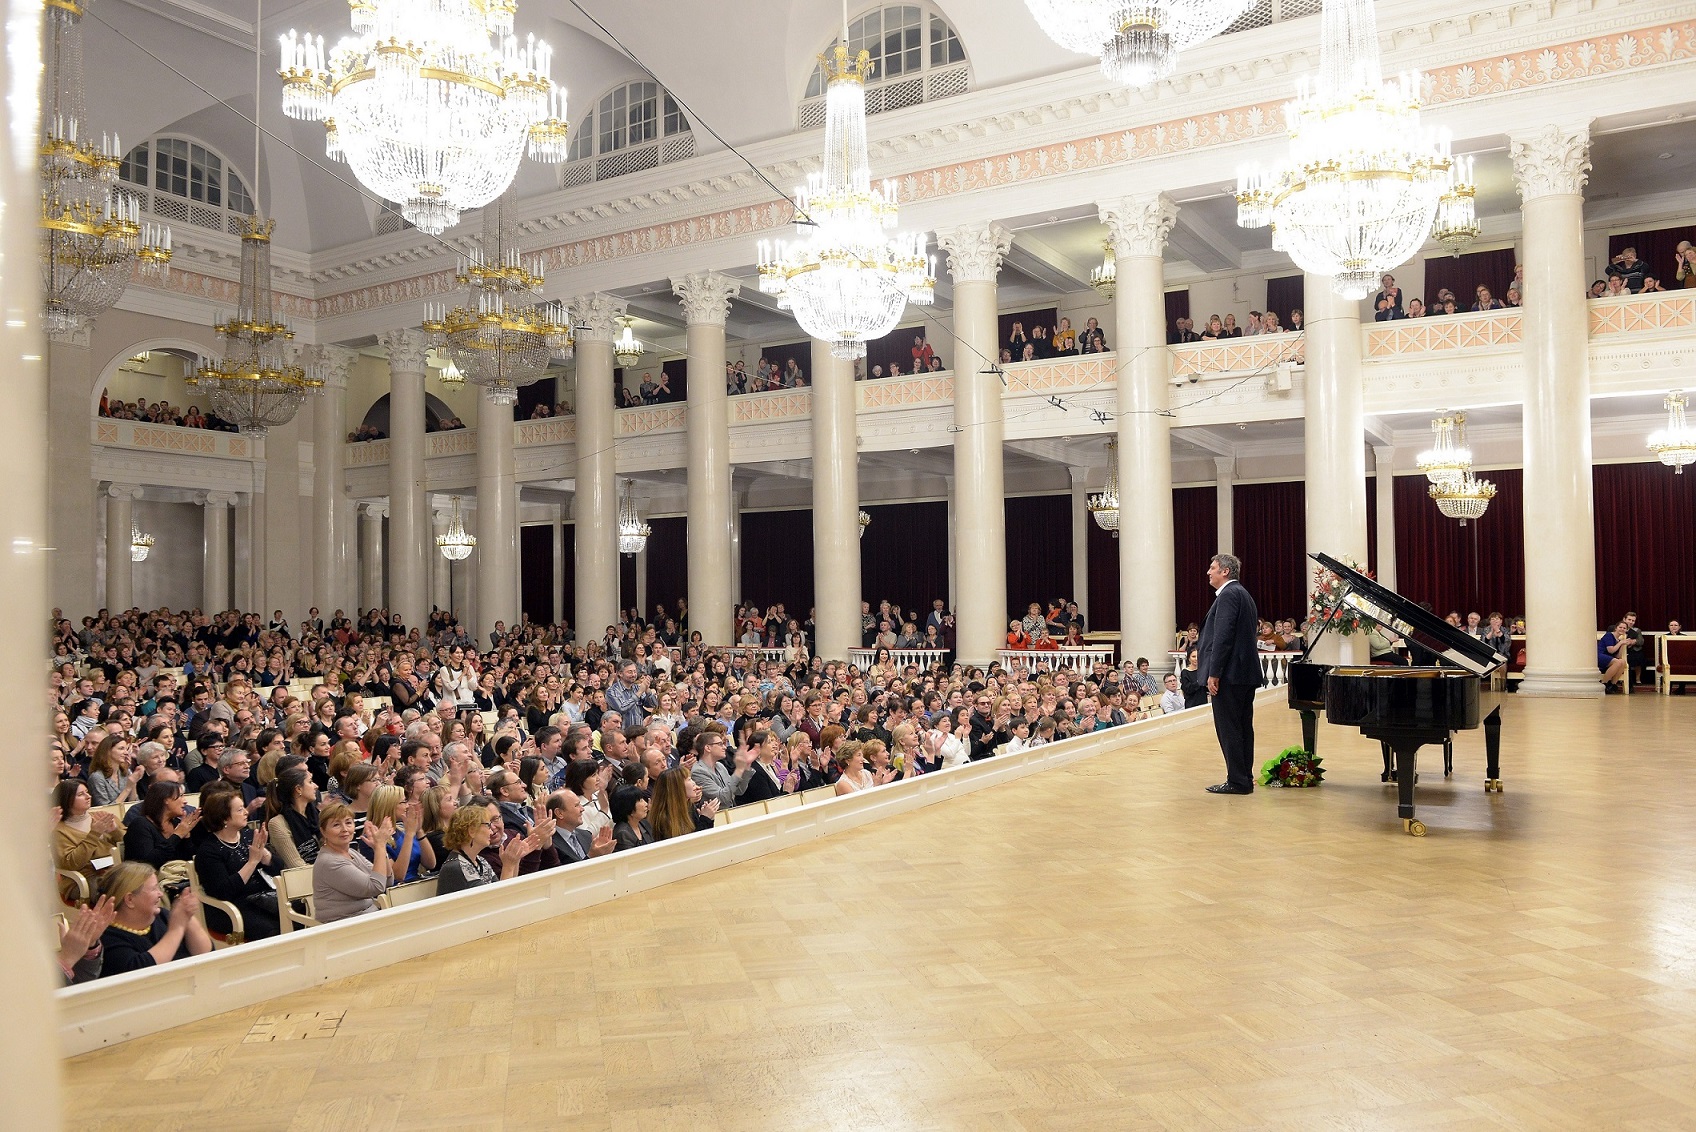 Борис Березовский дважды выступит в Петербургской филармонии